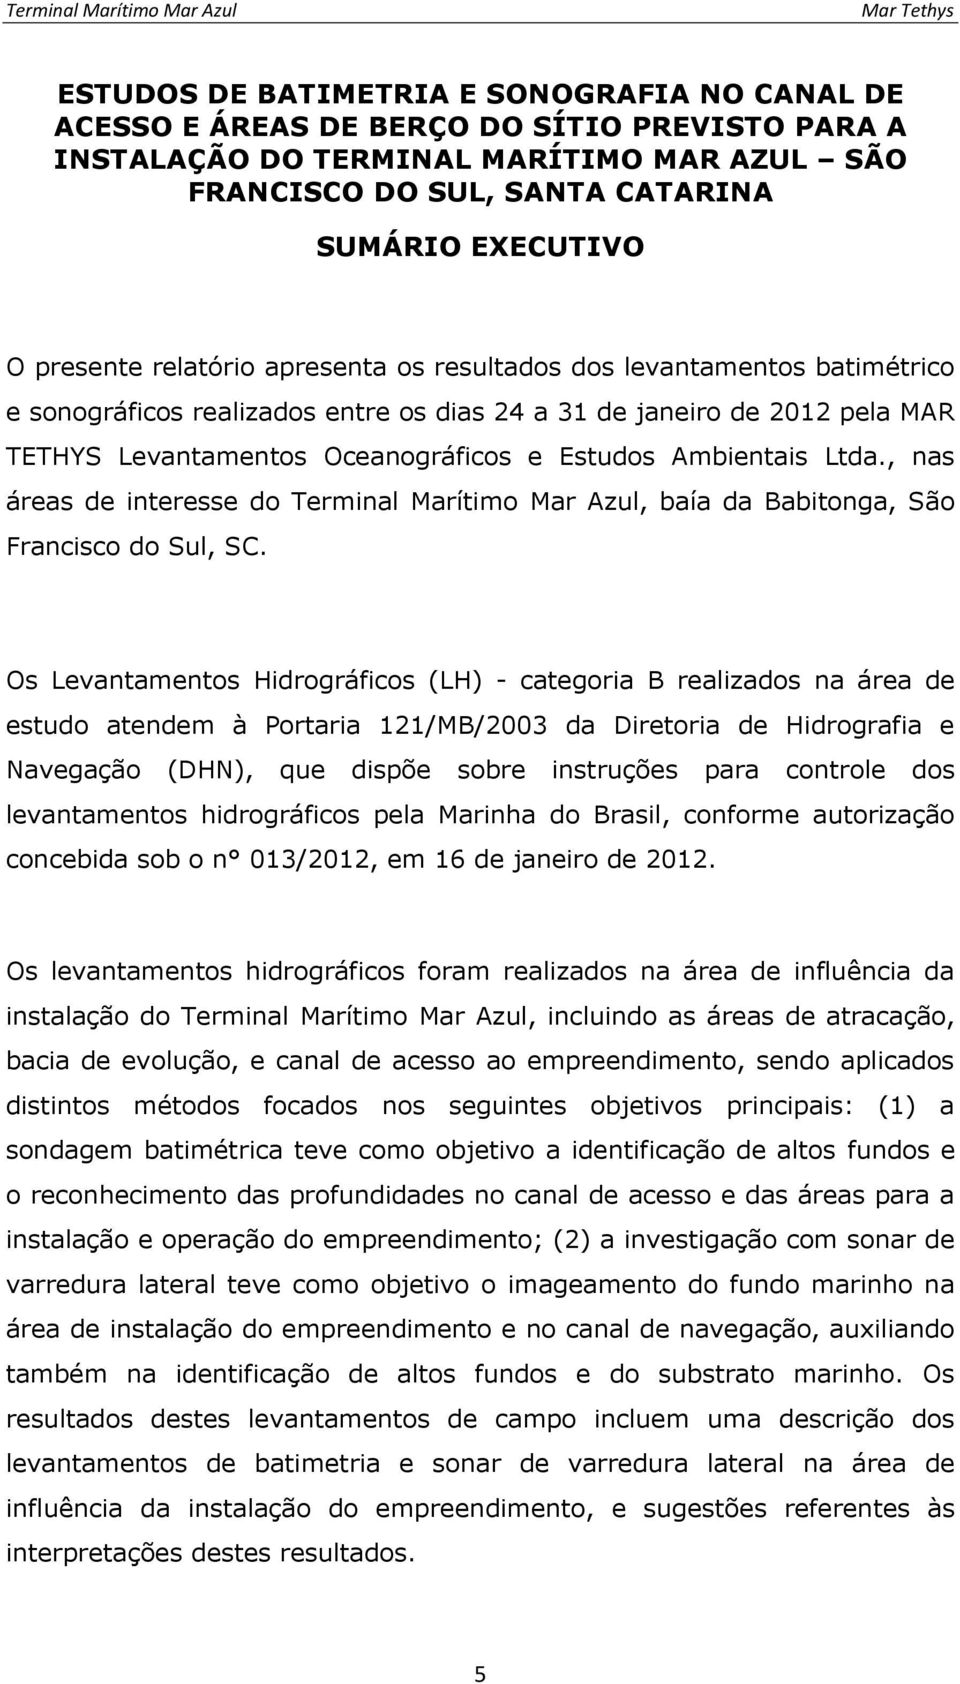 Ambientais Ltda., nas áreas de interesse do Terminal Marítimo Mar Azul, baía da Babitonga, São Francisco do Sul, SC.